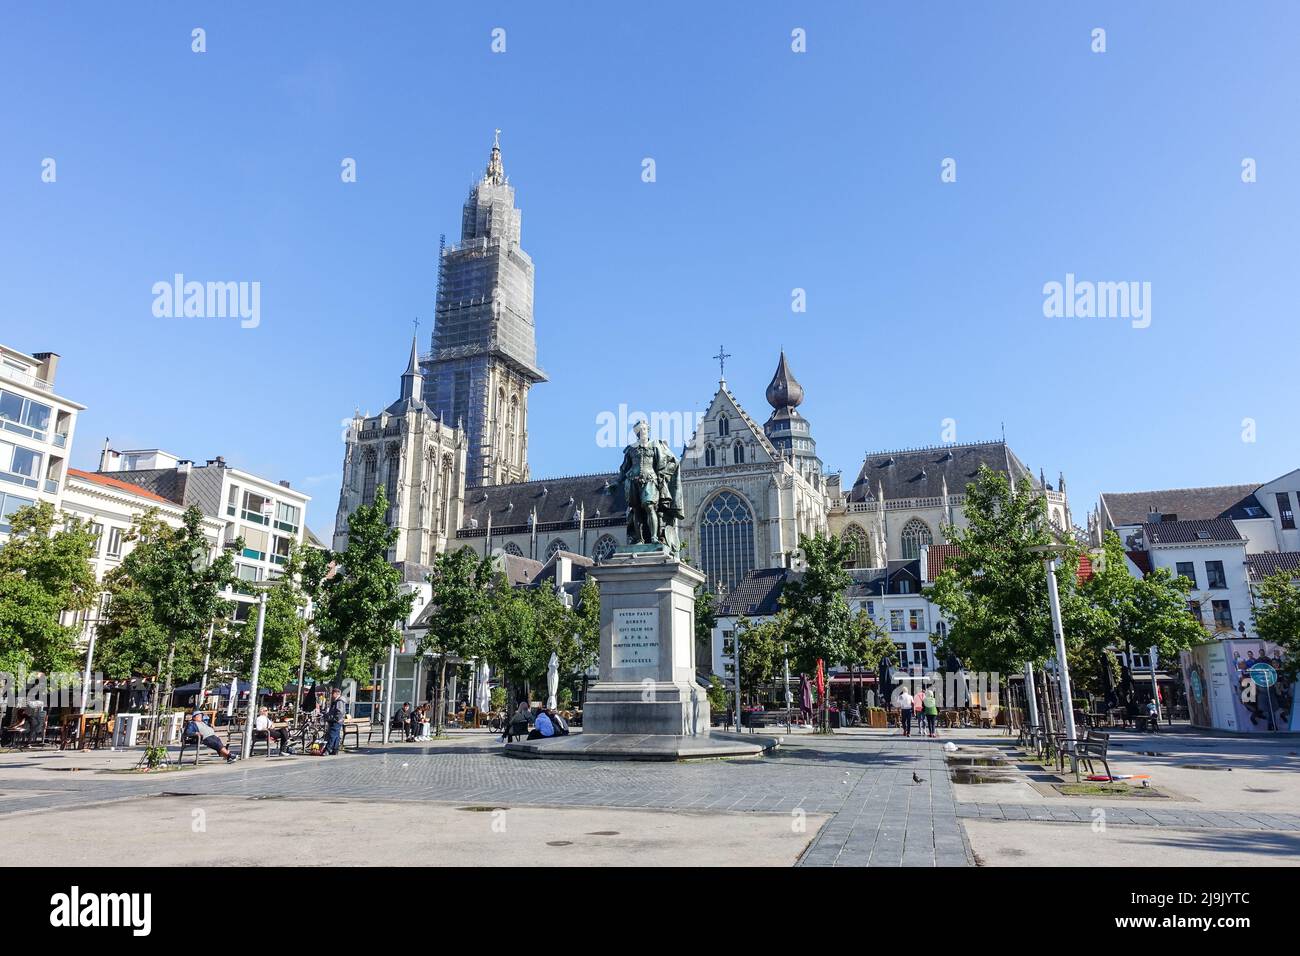 Antwerpen, Belgien - 11. Jul 2021: Blick auf die Kathedrale unserer Lieben Frau (Lieve-Vrouwekathedral) im Stadtzentrum von Antwerpen. Stockfoto